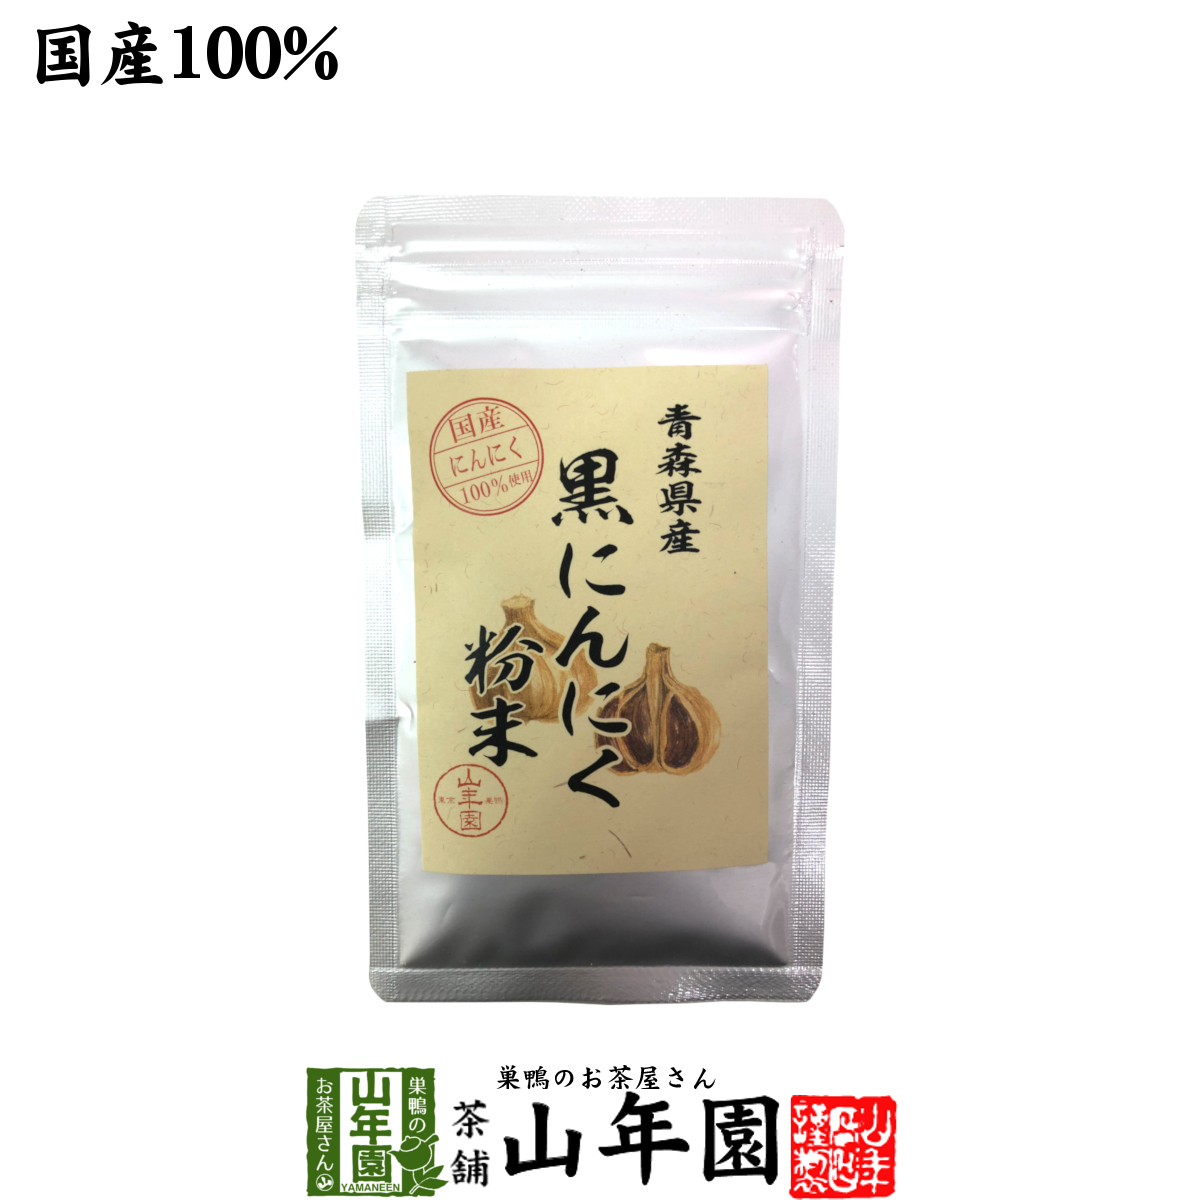  health food domestic production 100% Aomori prefecture production black garlic powder 30g Aomori prefecture. ... large ground .... large grain. garlic ...